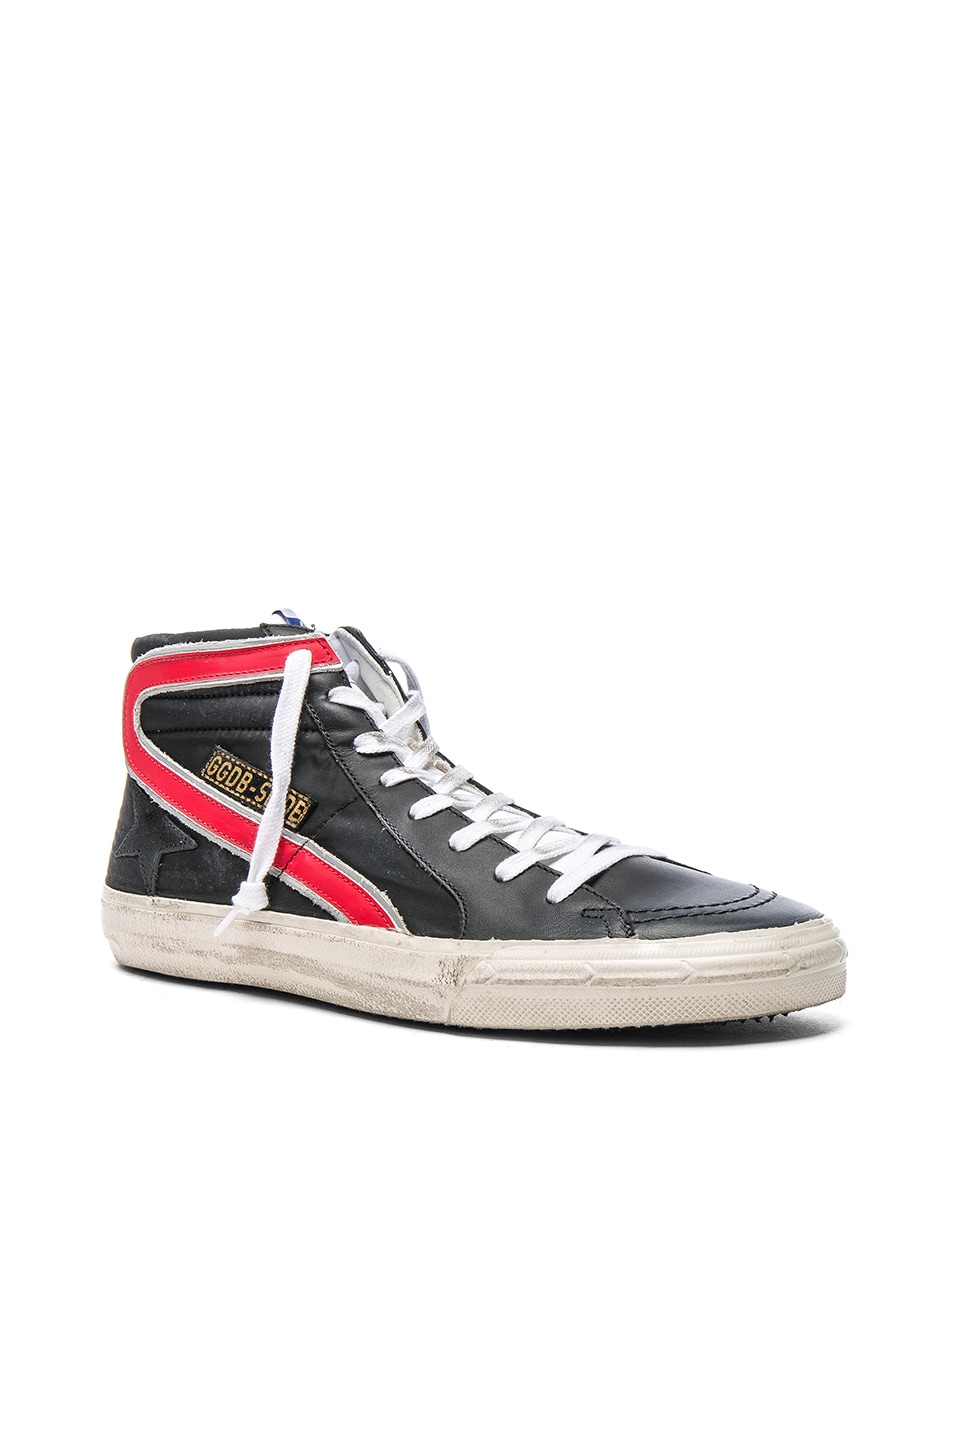 Image 1 of Golden Goose Nylon Slide Sneakers in Black Nylon & Red